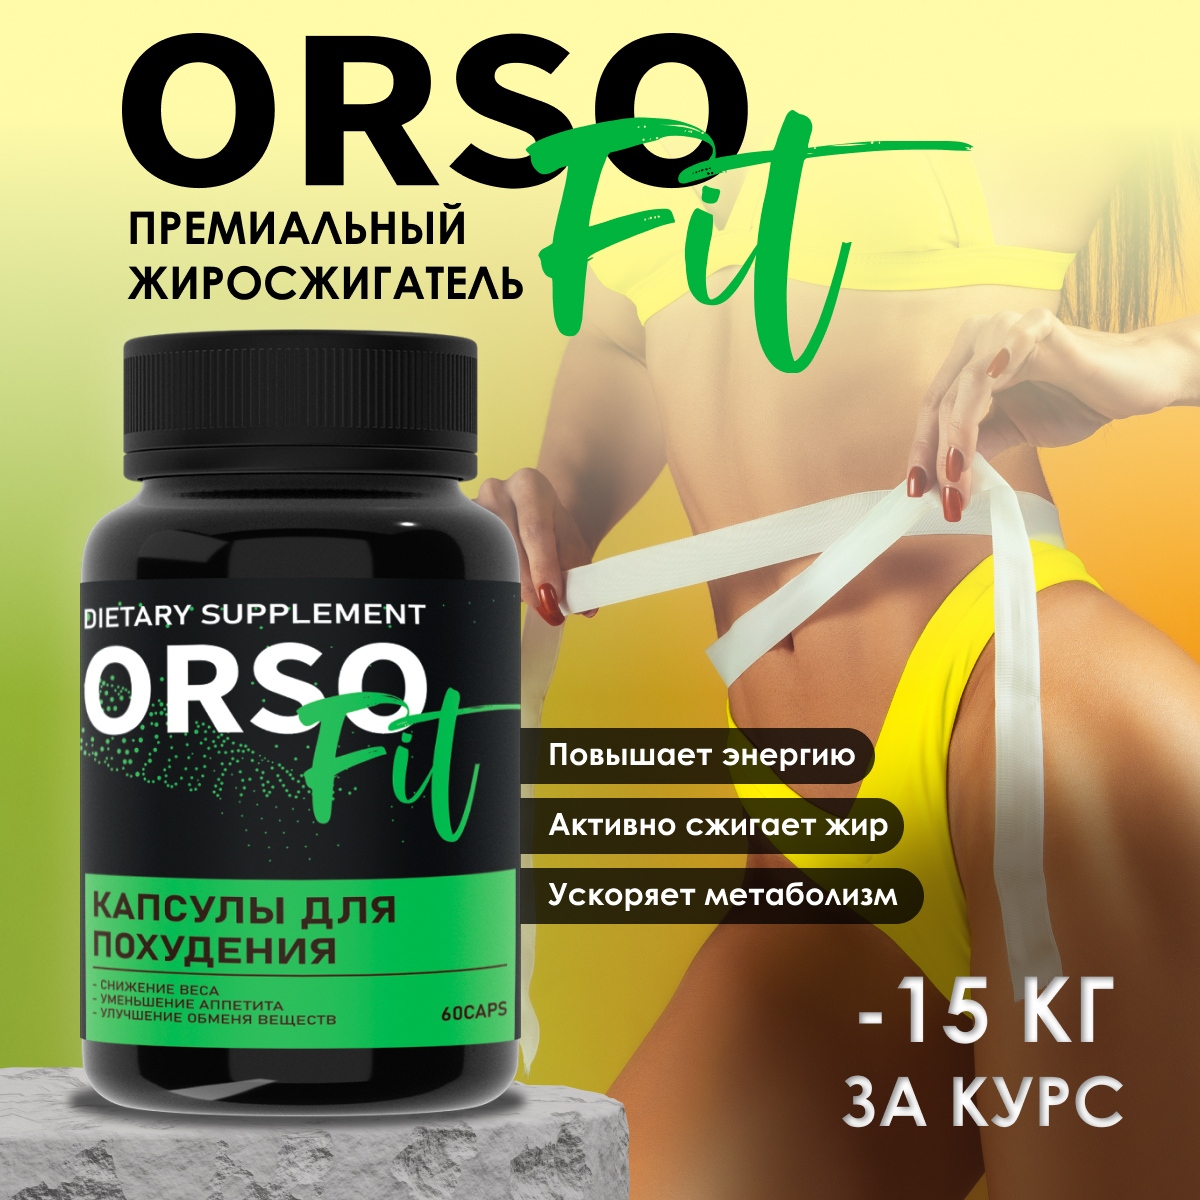 Купить OrsofitPrem(Bk), Биологически активная добавка ORSOFIT Premium Орсофит для похудения, 60 капсул, ORSOFIT Premium Black